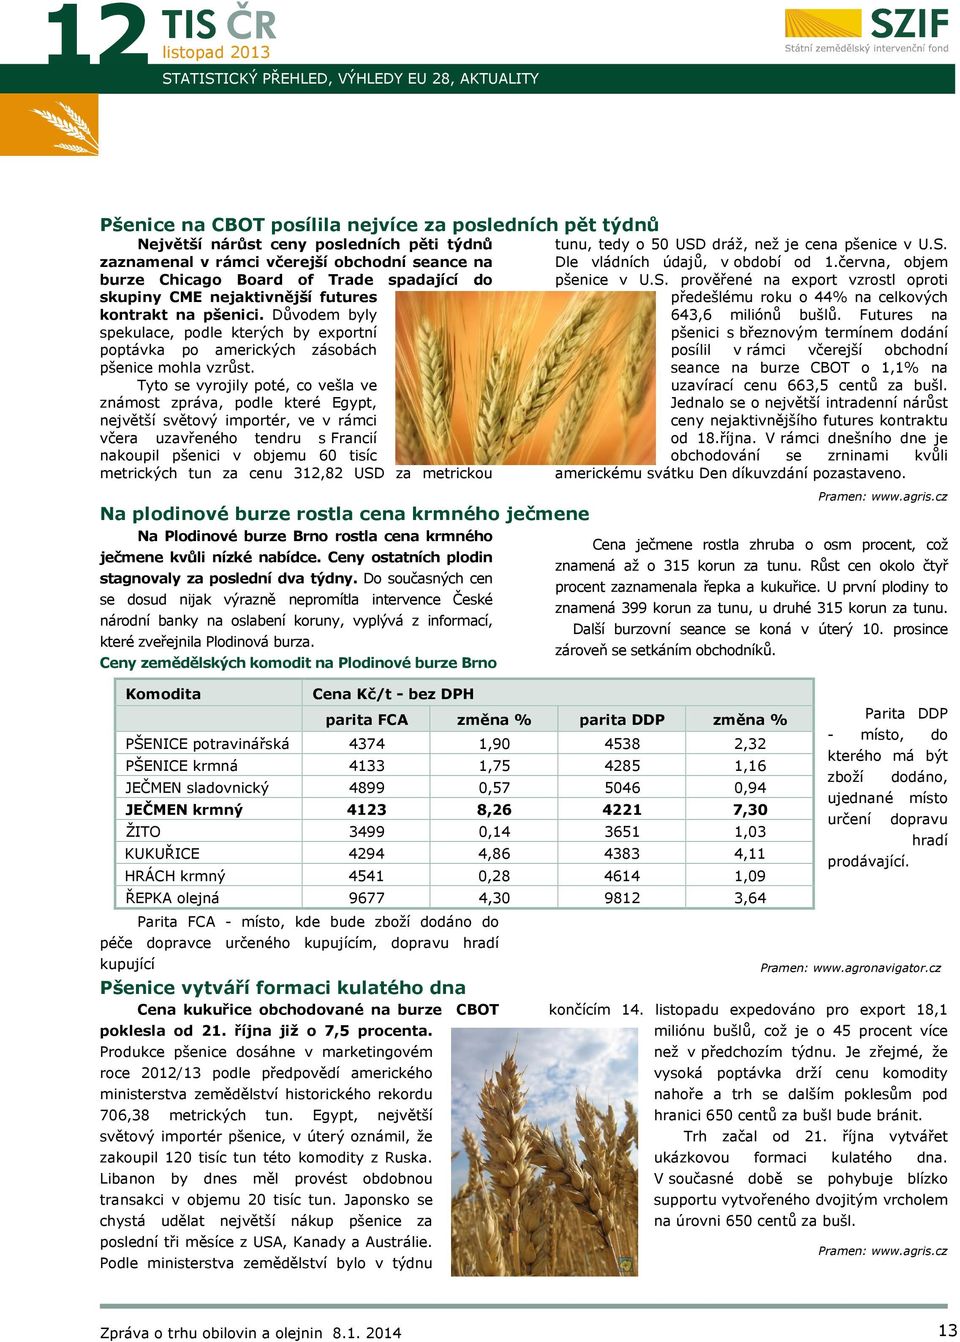 června, objem pšenice v U.S. prověřené na export vzrostl oproti předešlému roku o 44% na celkových 643,6 miliónů bušlů.